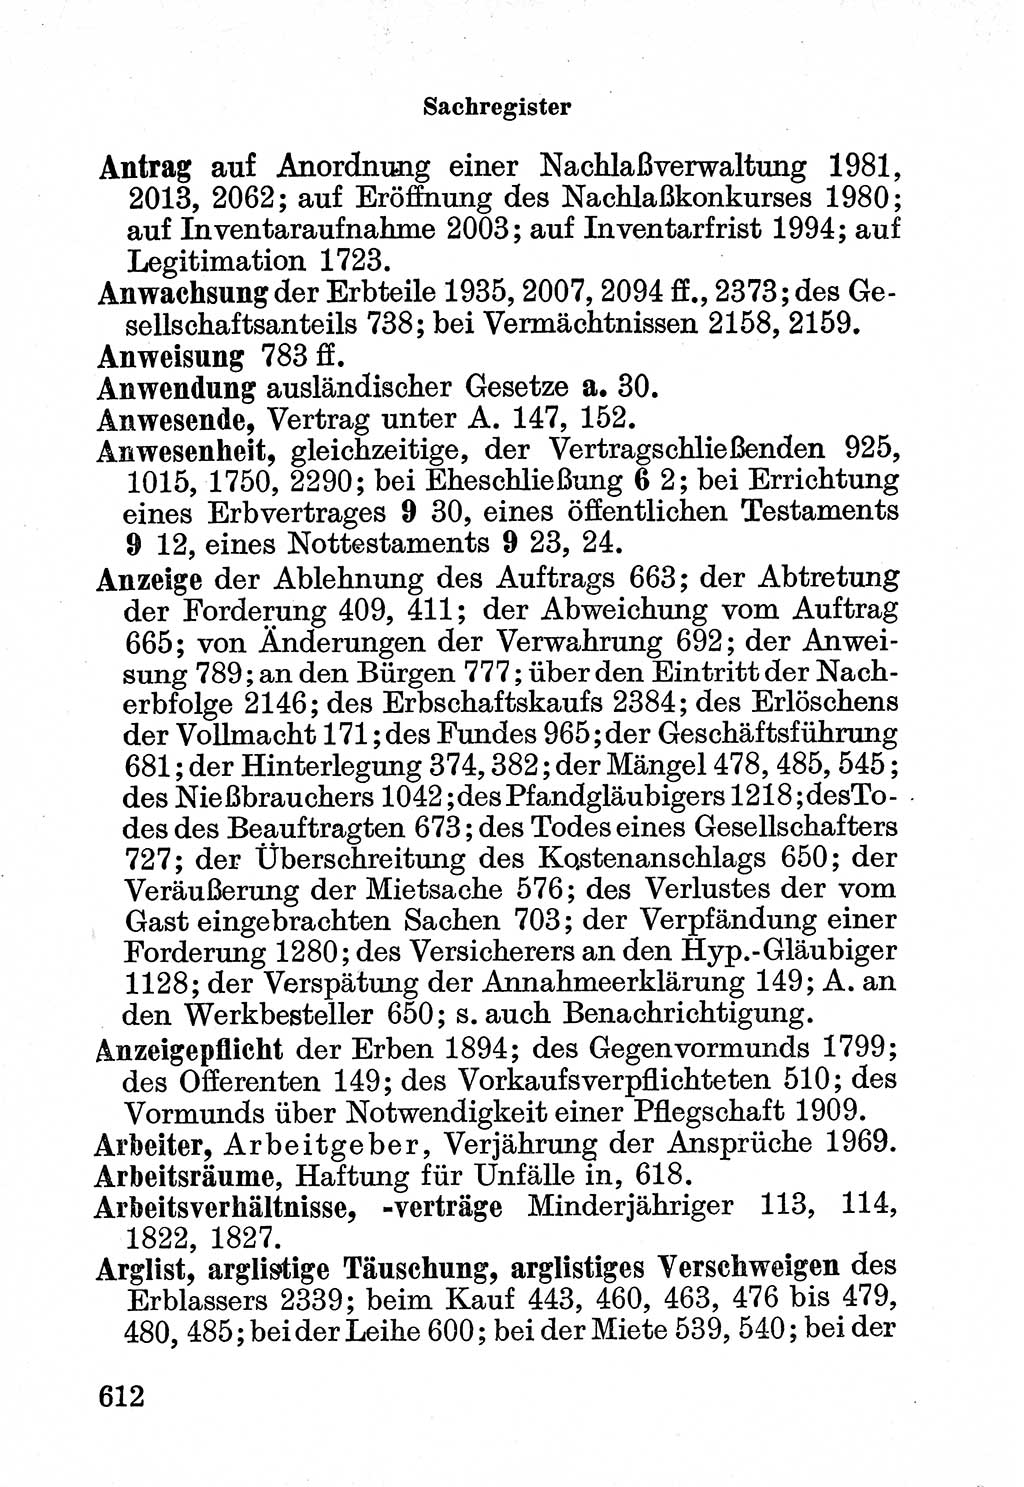 Bürgerliches Gesetzbuch (BGB) nebst wichtigen Nebengesetzen [Deutsche Demokratische Republik (DDR)] 1956, Seite 612 (BGB Nebenges. DDR 1956, S. 612)